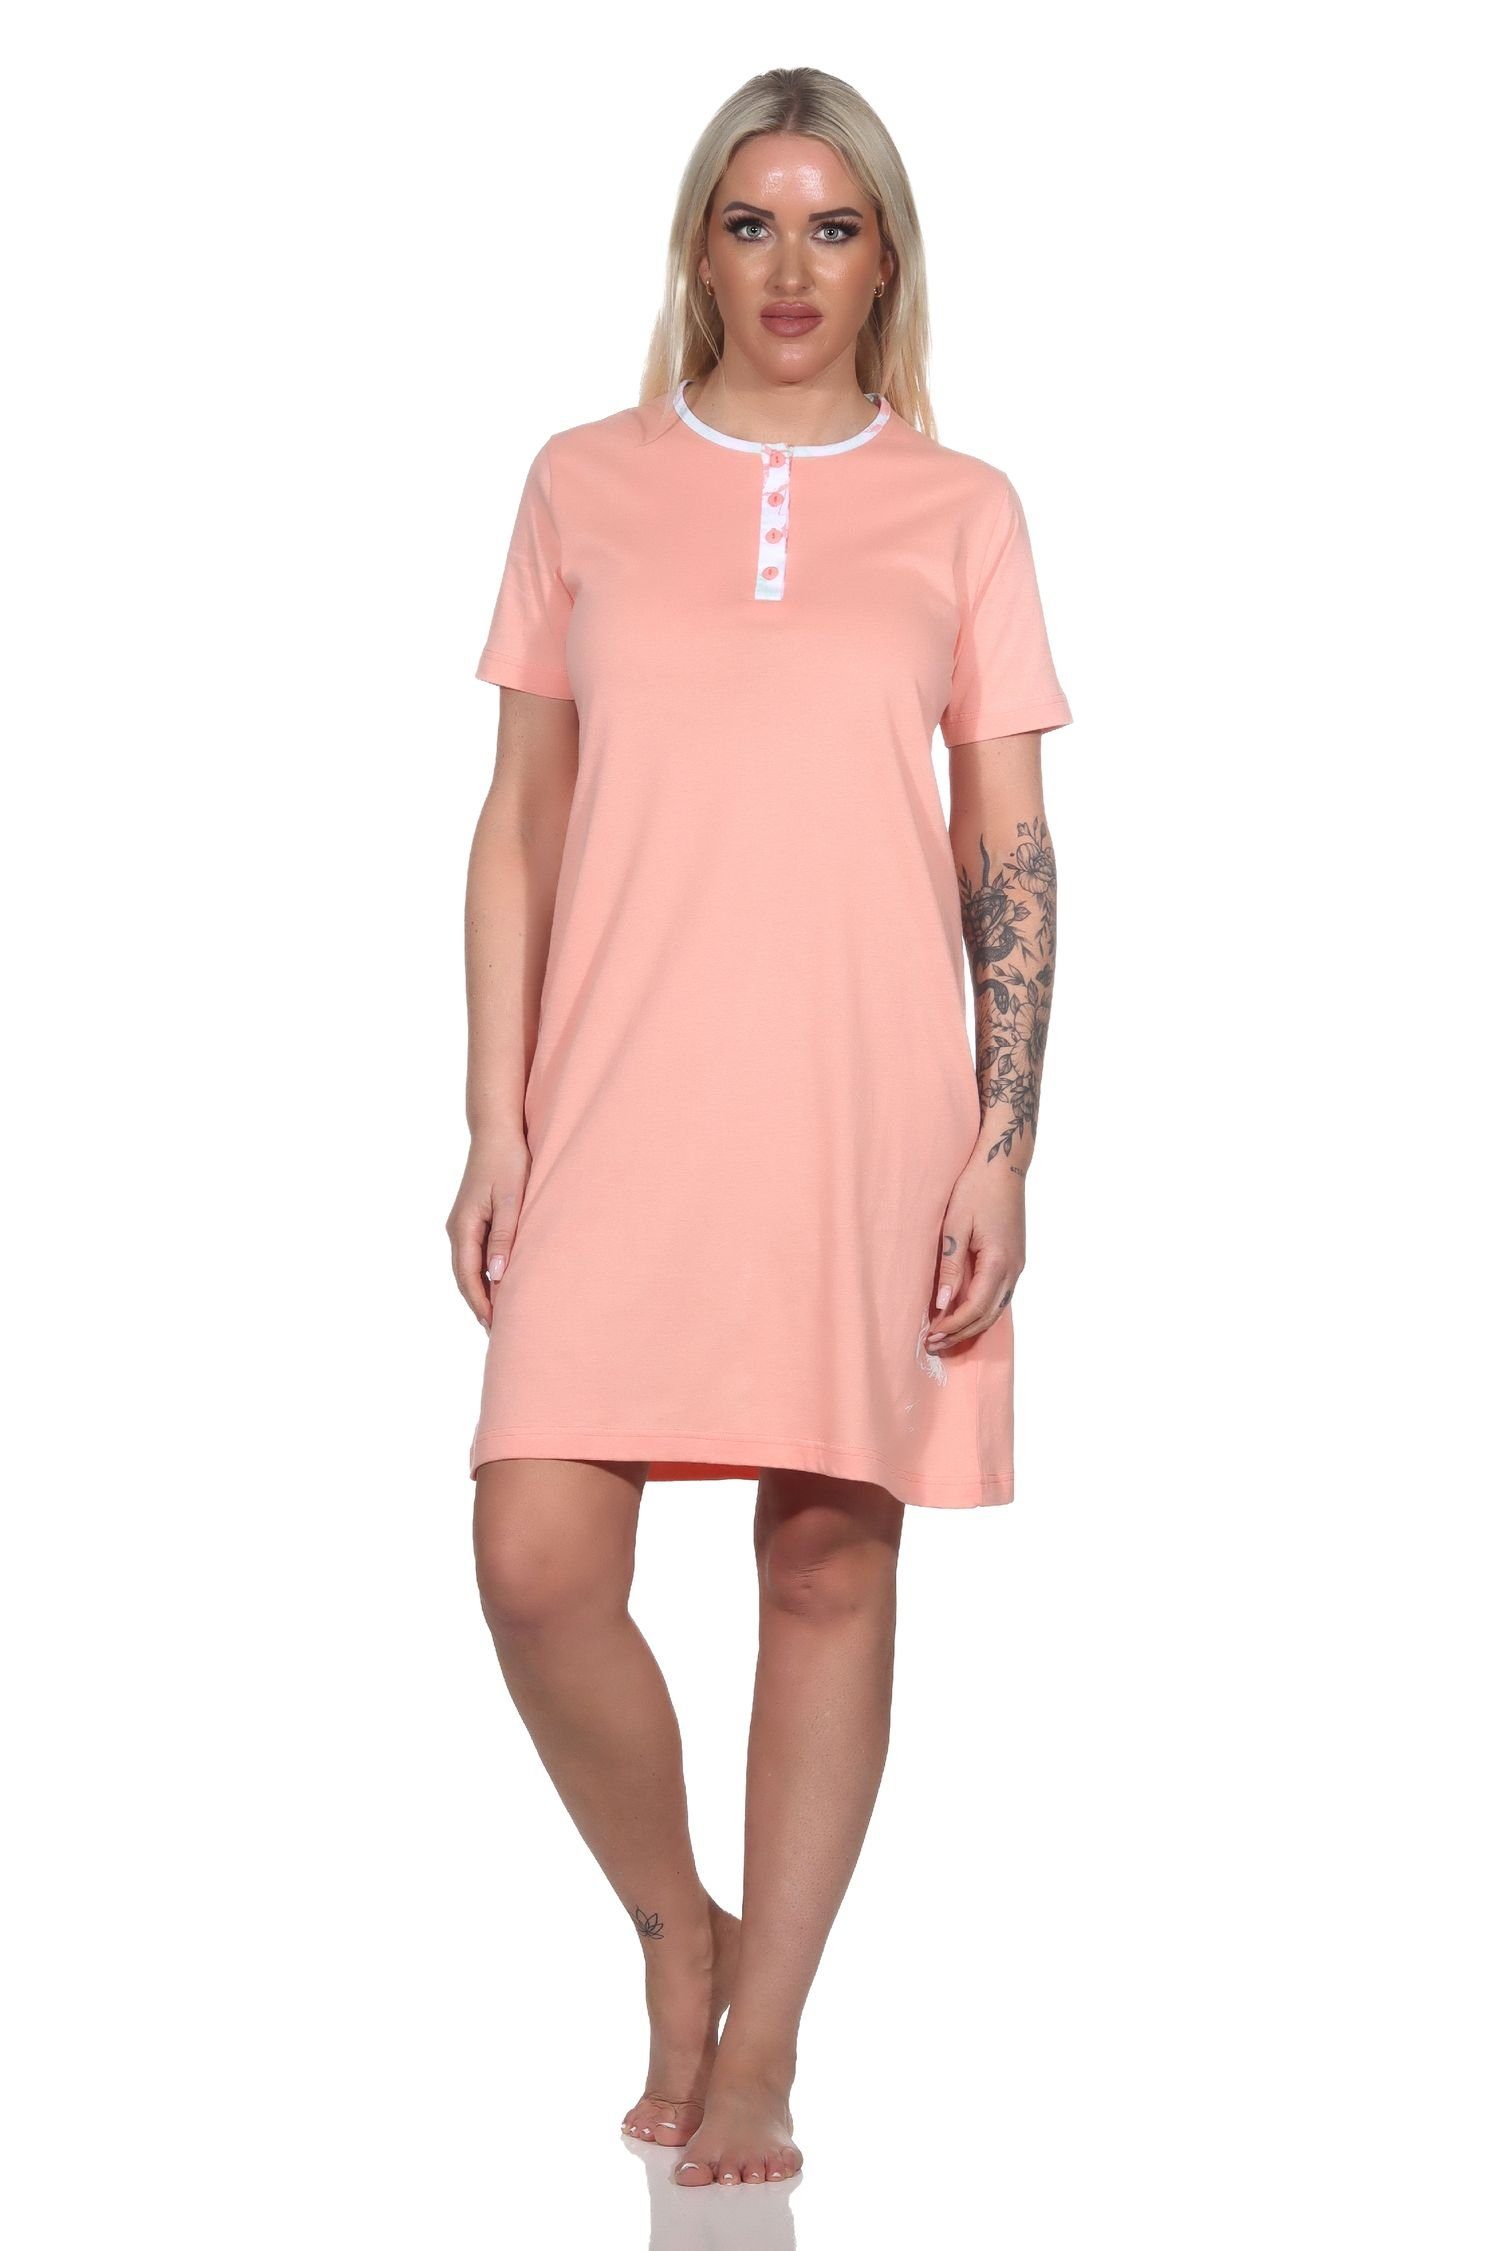 Normann Nachthemd Damen kurzarm Nachthemd mit Flamingo Motiv und Knopfleiste am Hals apricot